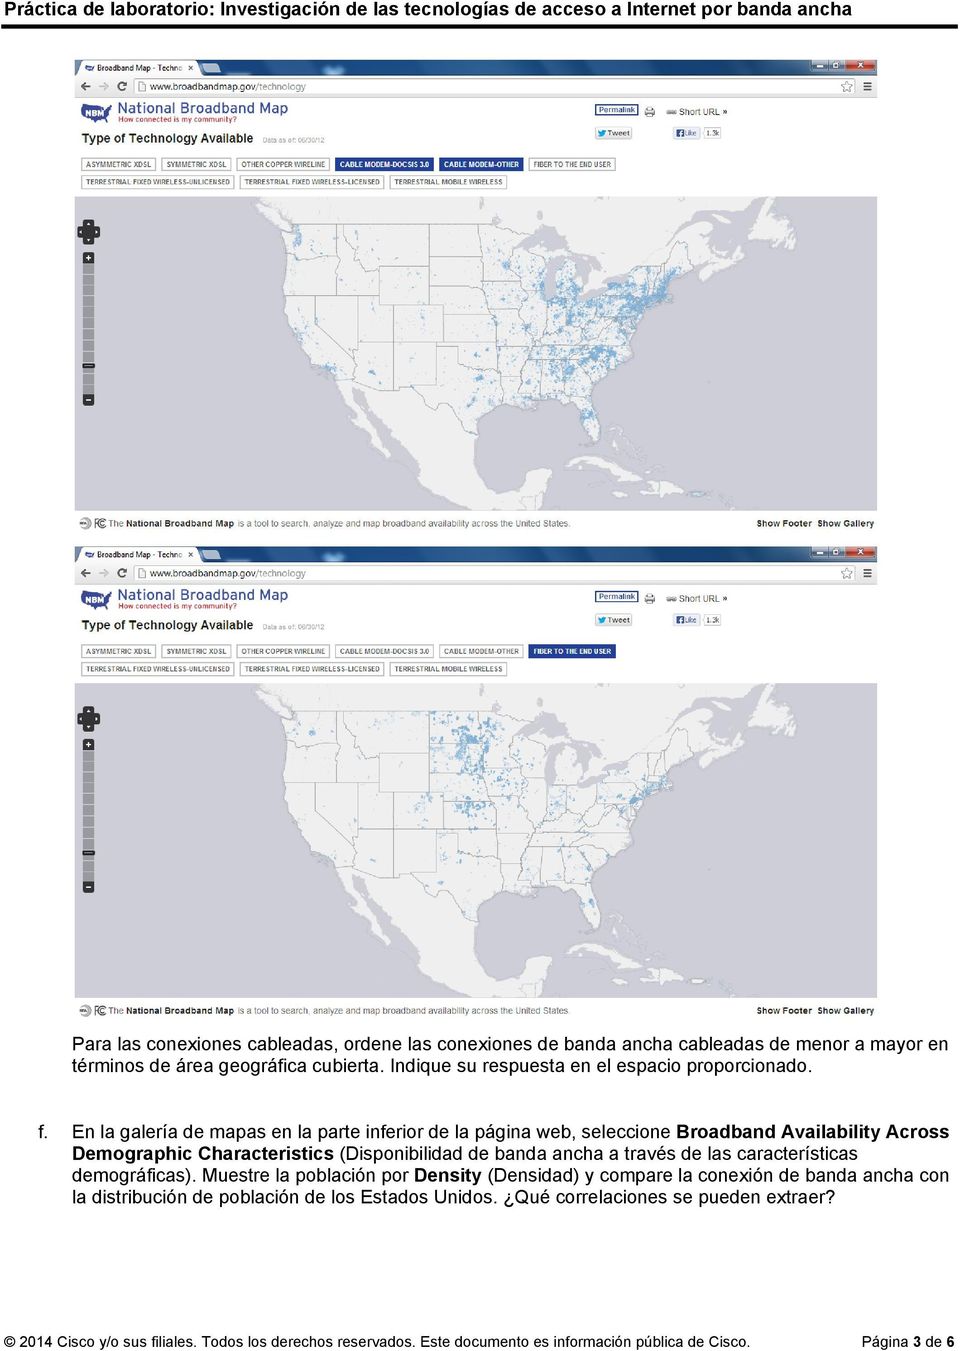 En la galería de mapas en la parte inferior de la página web, seleccione Broadband Availability Across Demographic Characteristics (Disponibilidad de banda ancha a través de